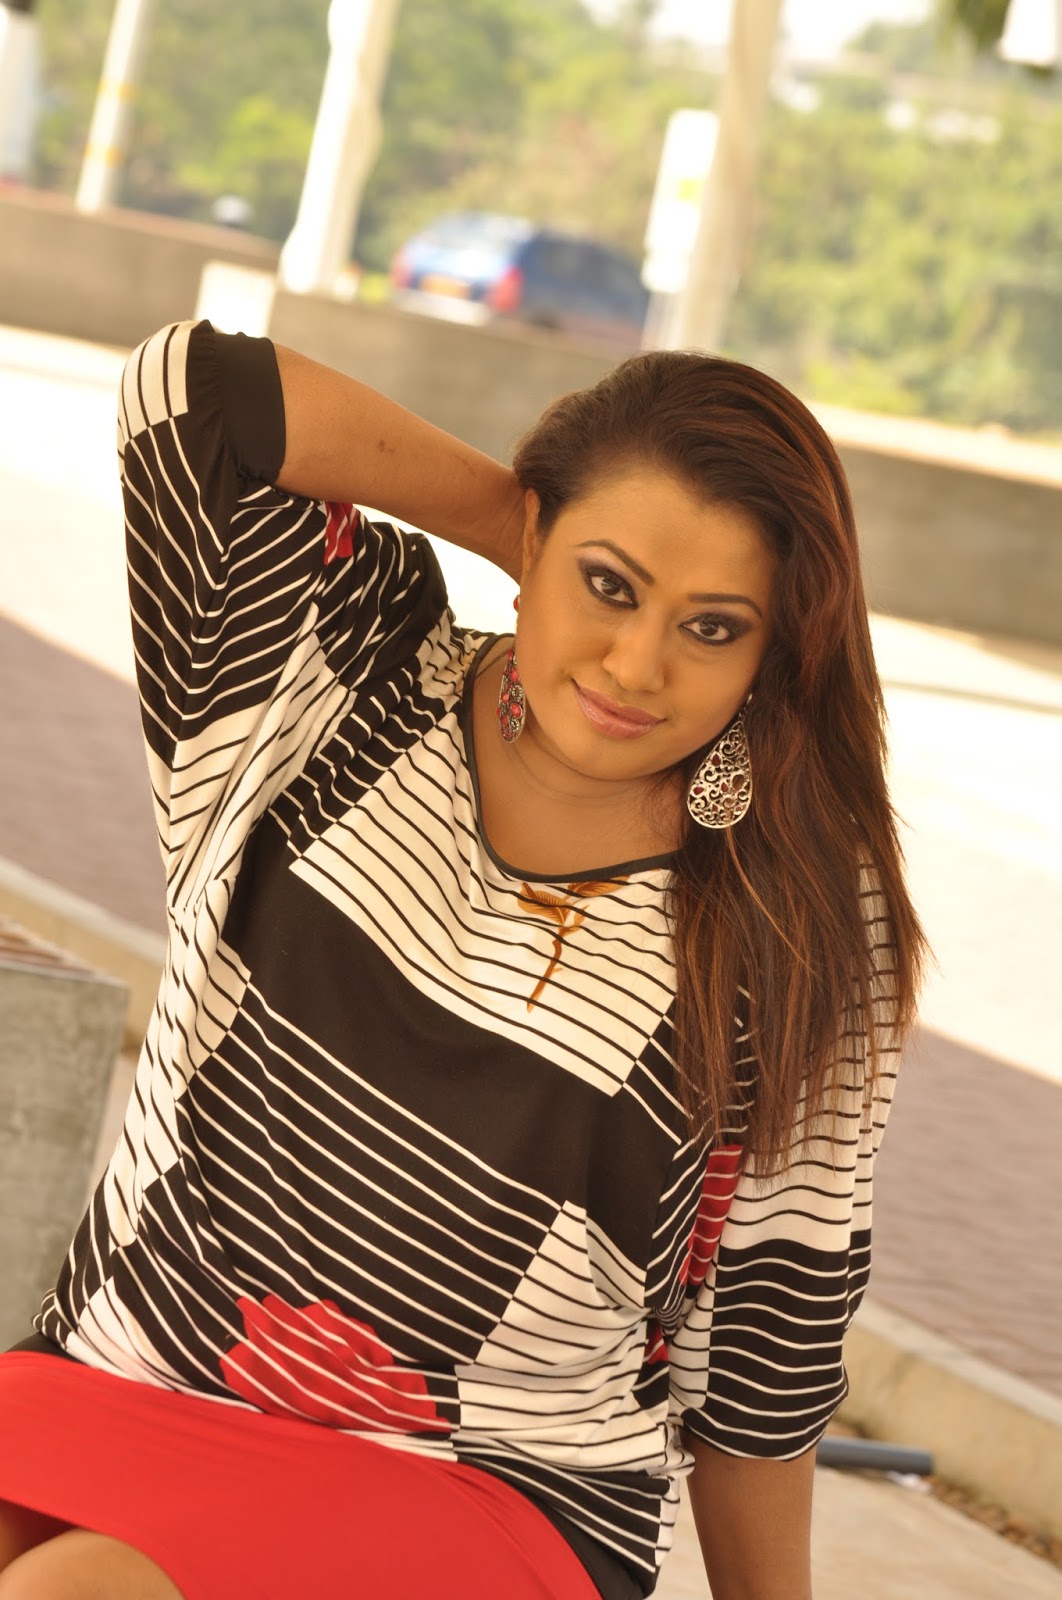 Nirosha Sex Film - Hot Images Lanka Nirosha Virajini Sri Lankan Top Singer | Free Hot ...